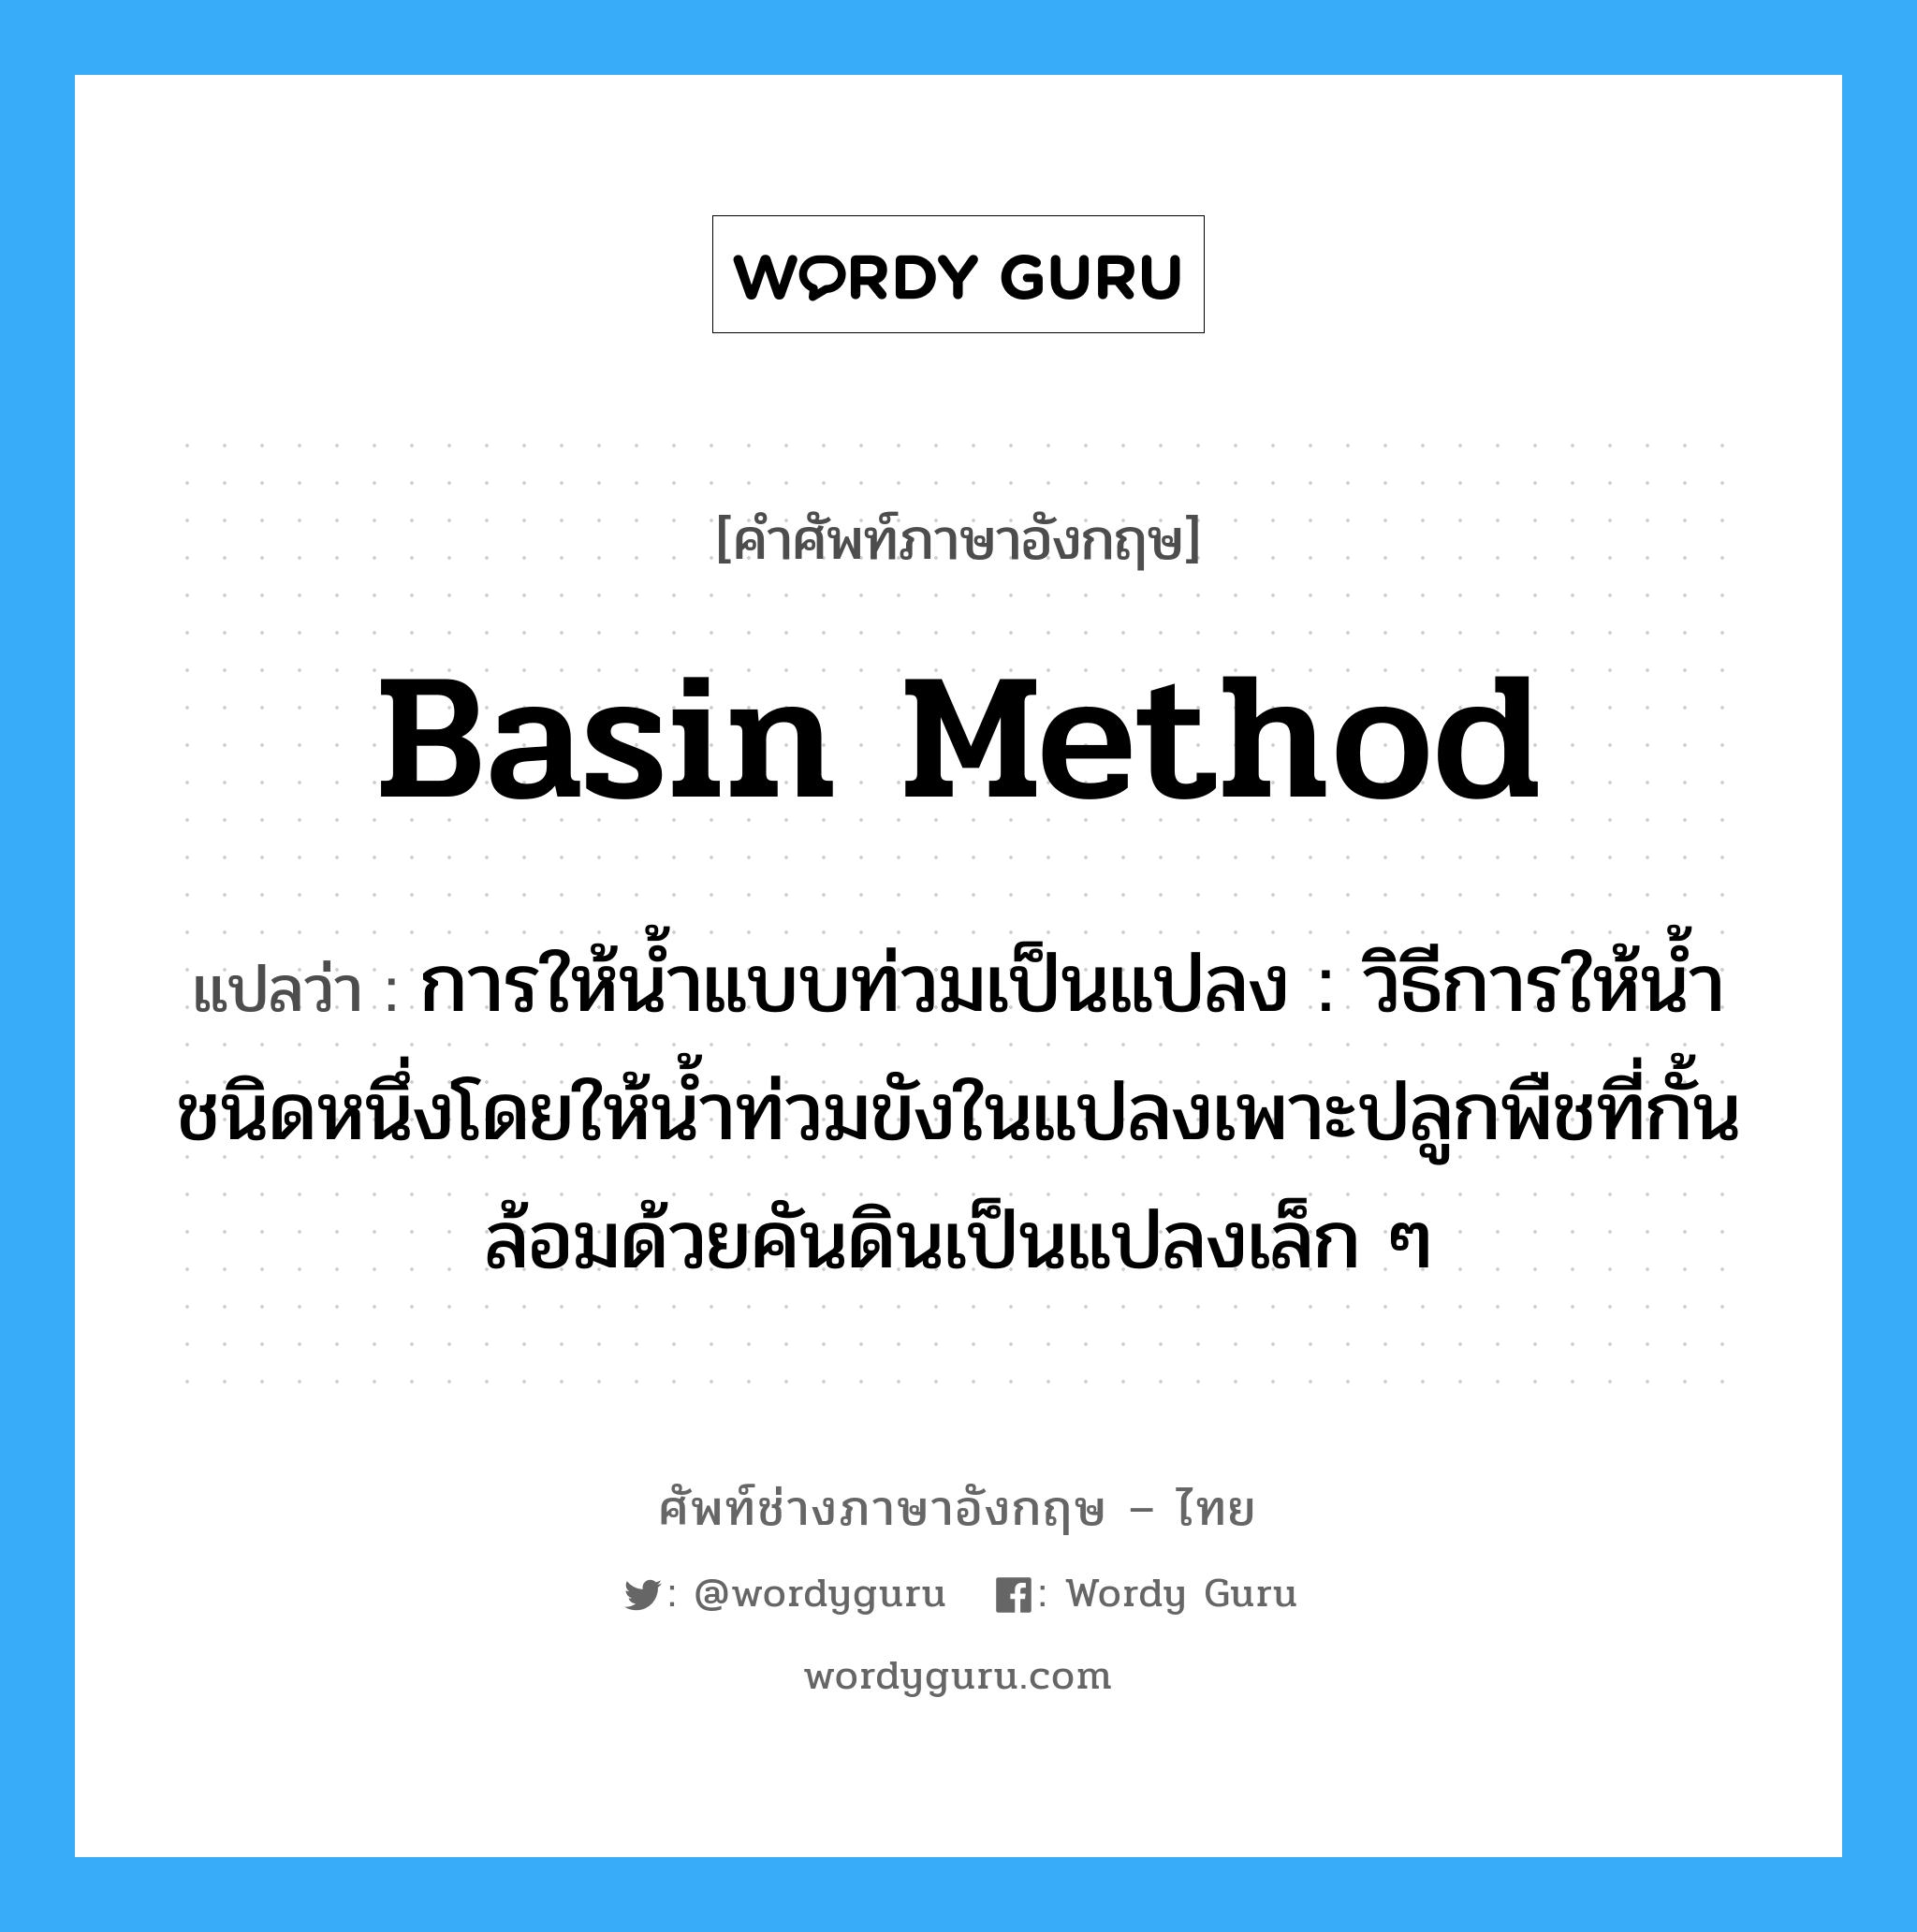 basin method แปลว่า?, คำศัพท์ช่างภาษาอังกฤษ - ไทย basin method คำศัพท์ภาษาอังกฤษ basin method แปลว่า การให้น้ำแบบท่วมเป็นแปลง : วิธีการให้น้ำชนิดหนึ่งโดยให้น้ำท่วมขังในแปลงเพาะปลูกพืชที่กั้นล้อมด้วยคันดินเป็นแปลงเล็ก ๆ